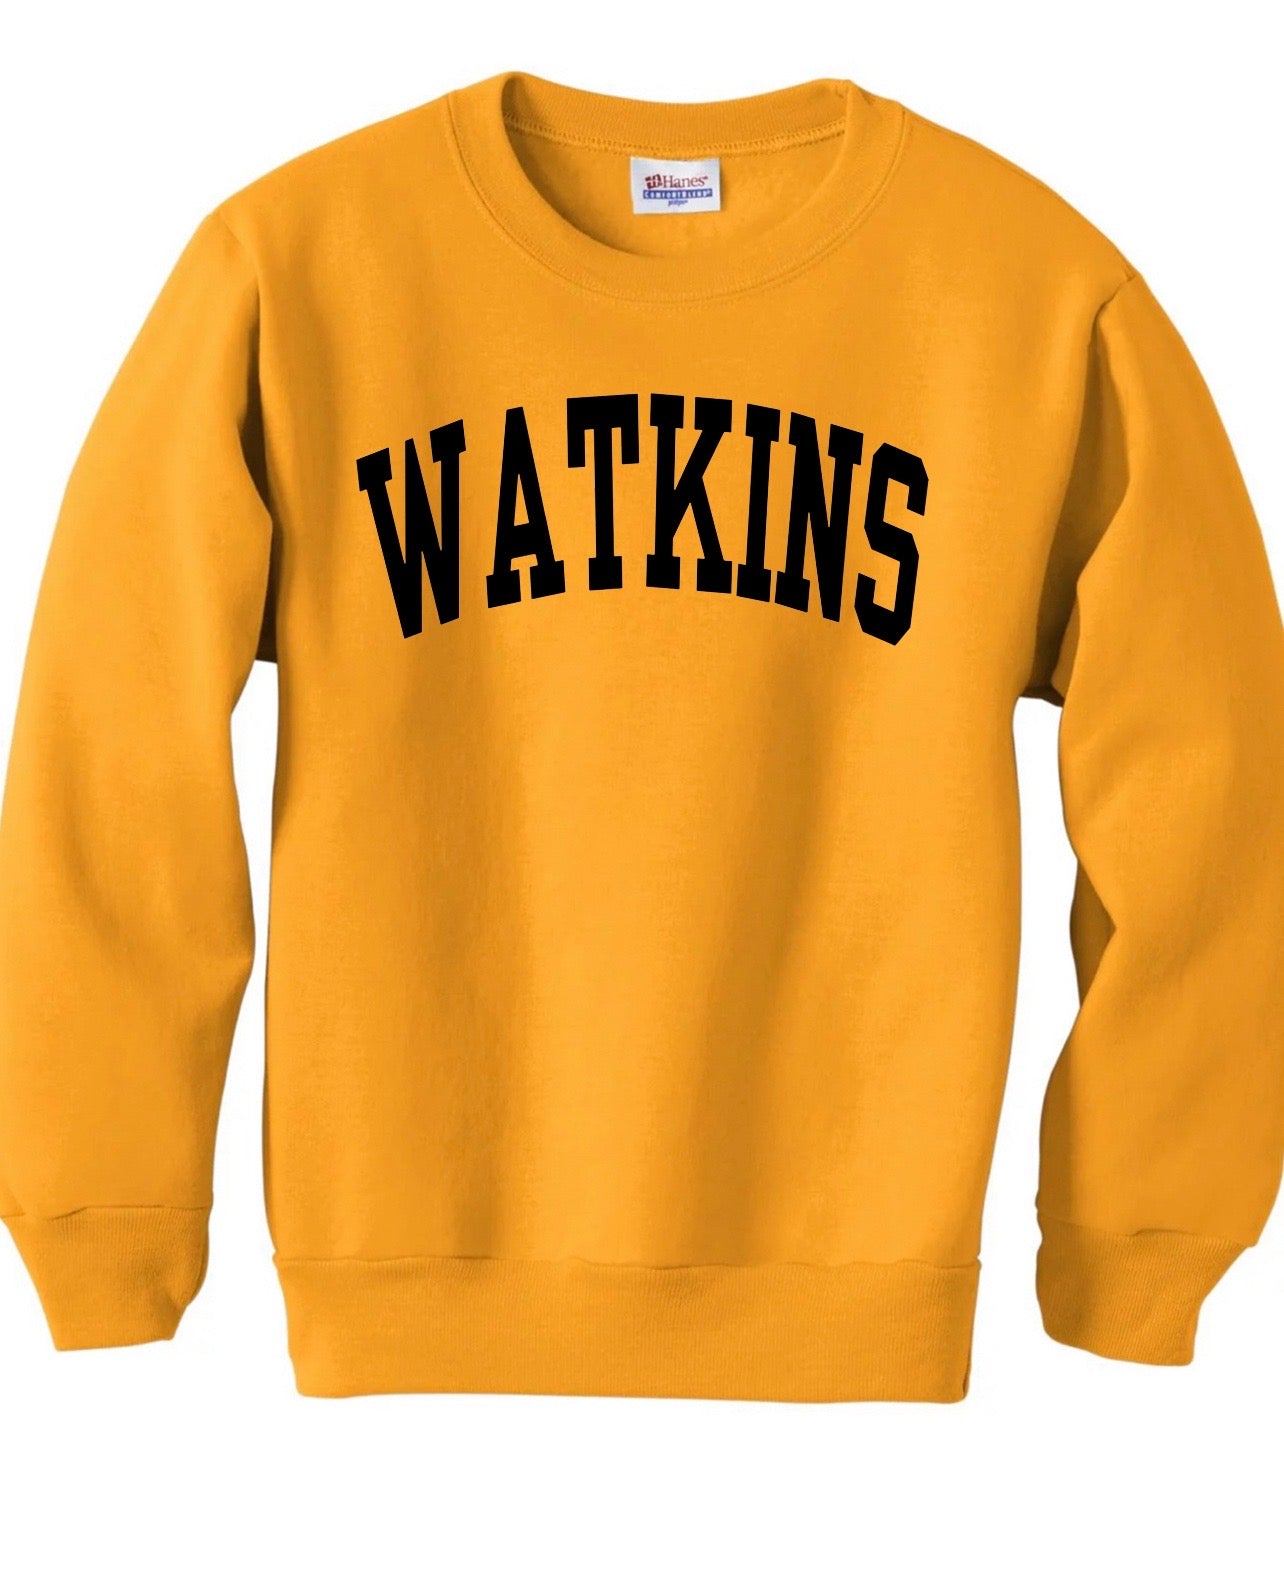 CUSTOMIZABLE School or Mascot Block Font Crewneck Sweatshirt: Pick Shirt Color, Wording & Vinyl Color